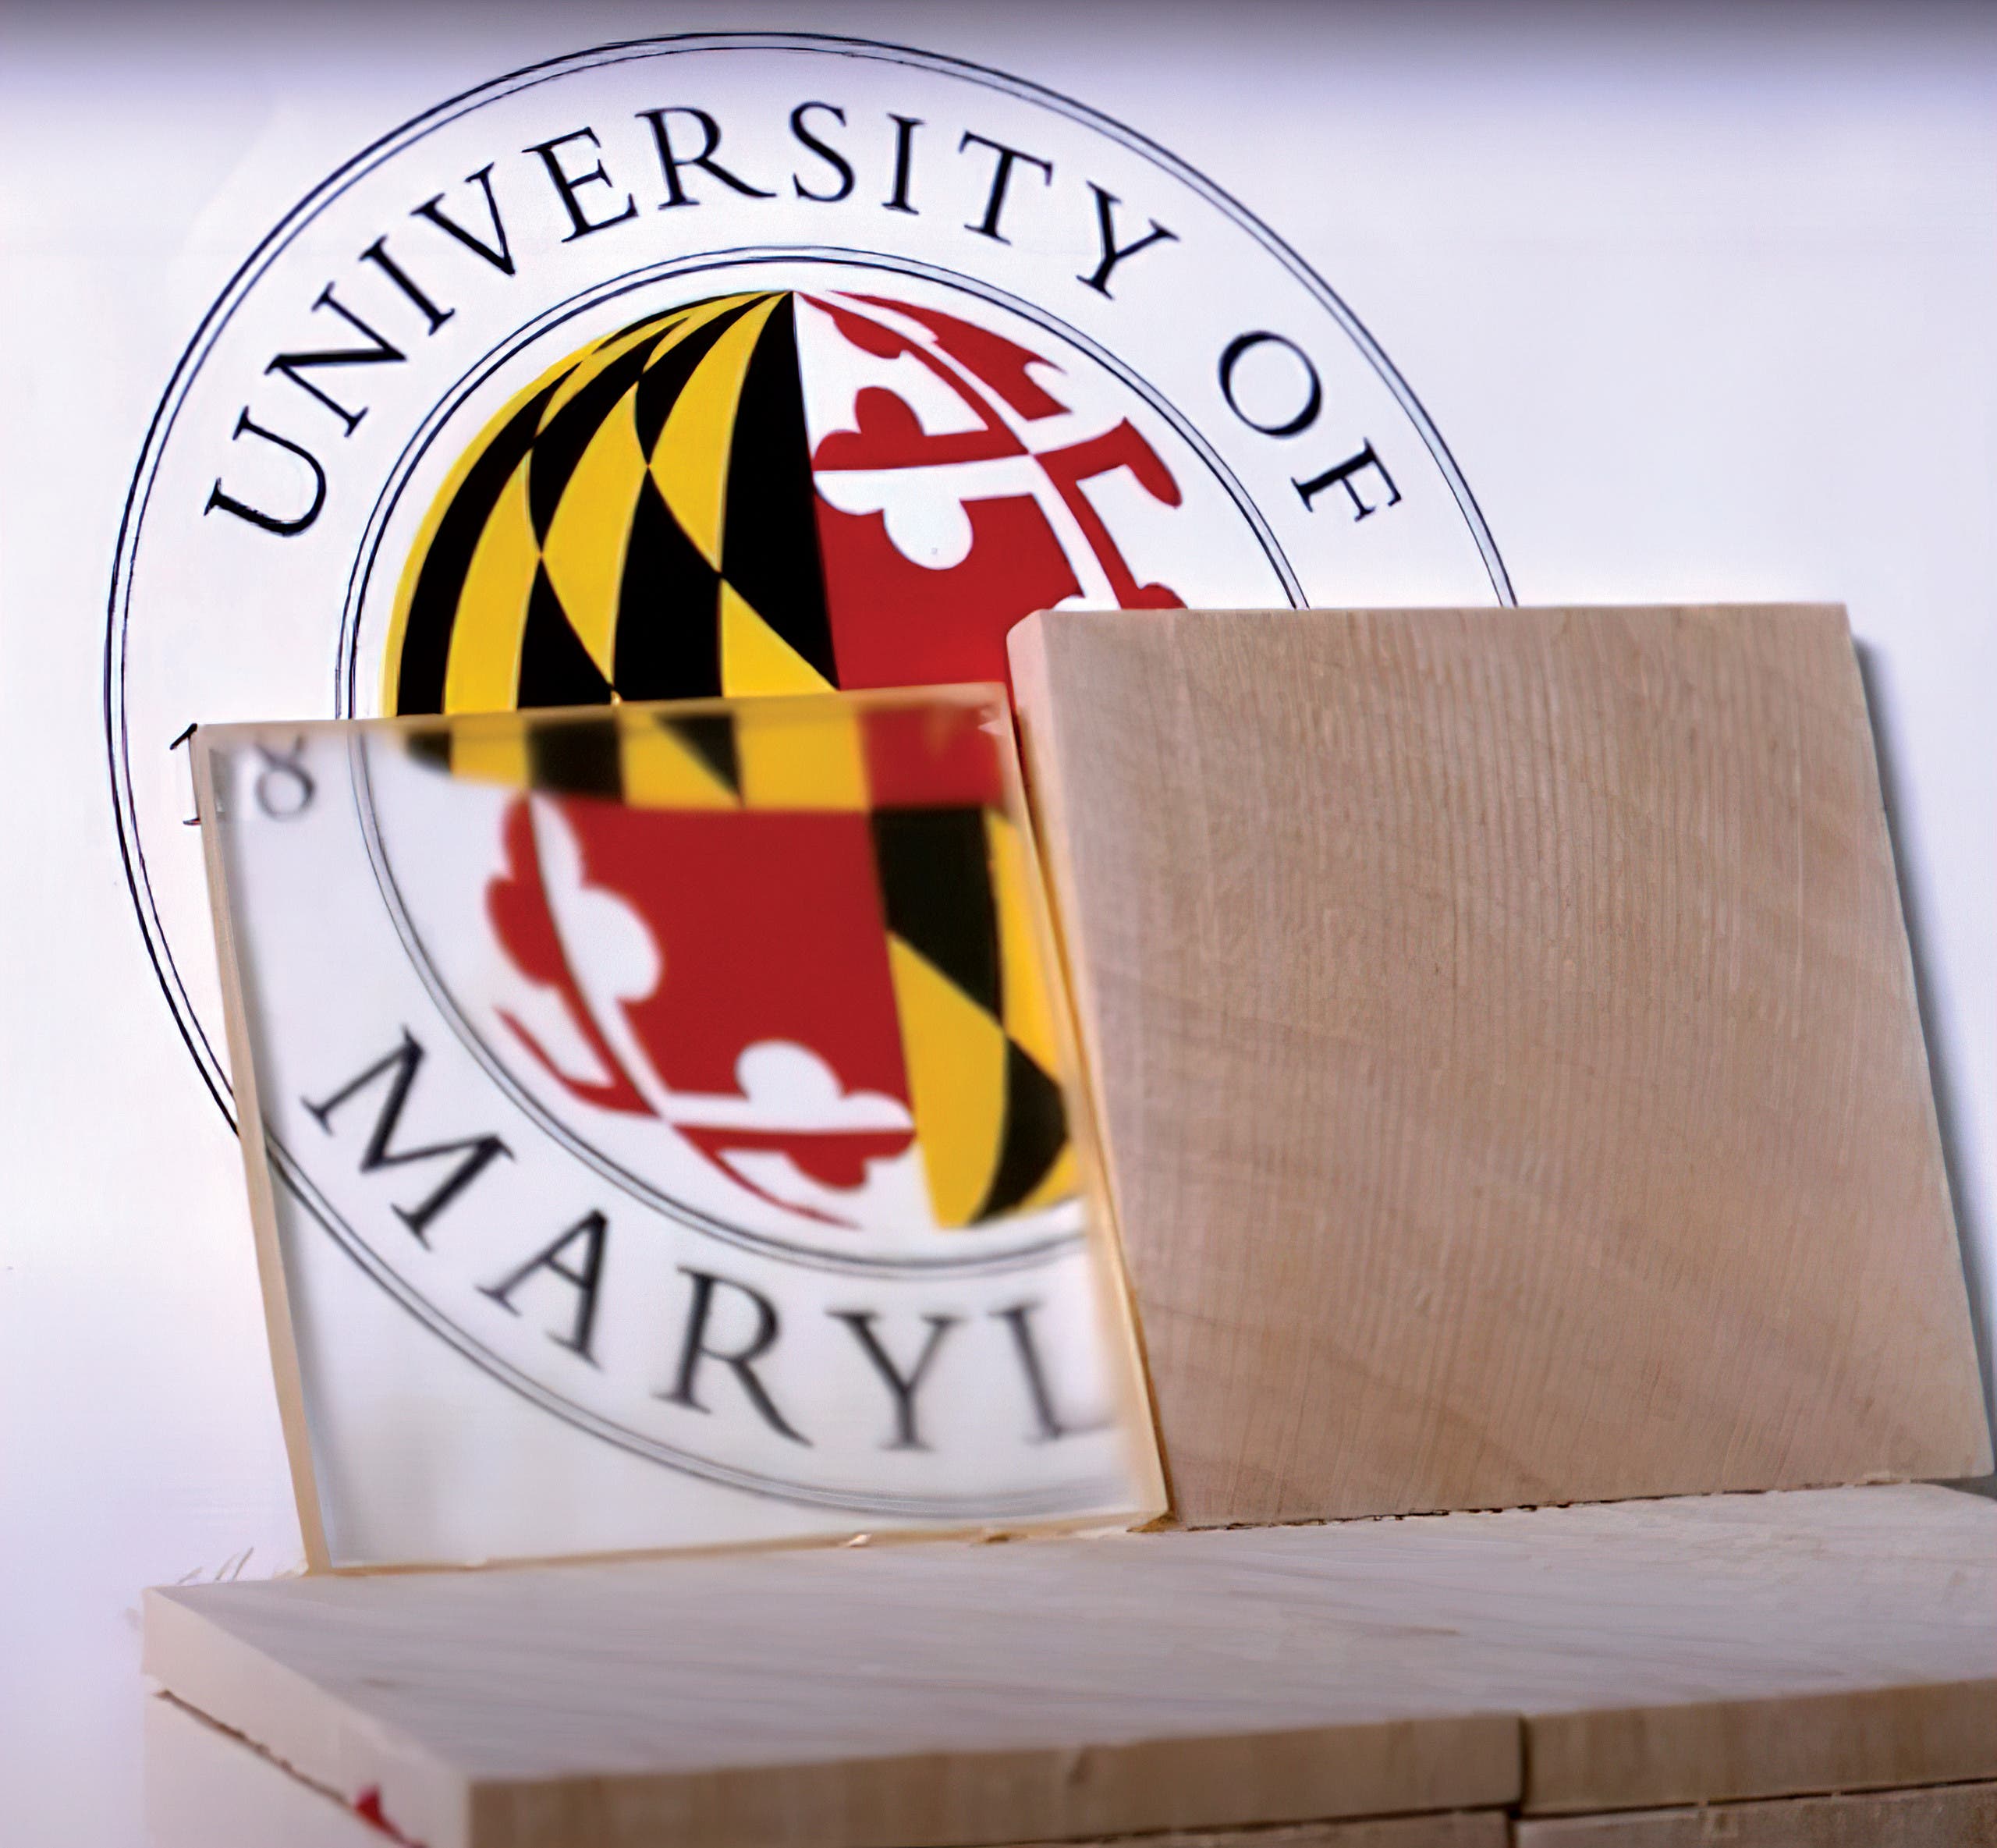 الطريقة الجديدة المحسَّنة لصناعة الخشب الشفّاف، التي اقترحها باحثو جامعة ميريلاند، لا تحتاج إلى التسخين أو أي استهلاك كبير آخر للطاقة، كالذي تستهلكه صناعة الزجاج